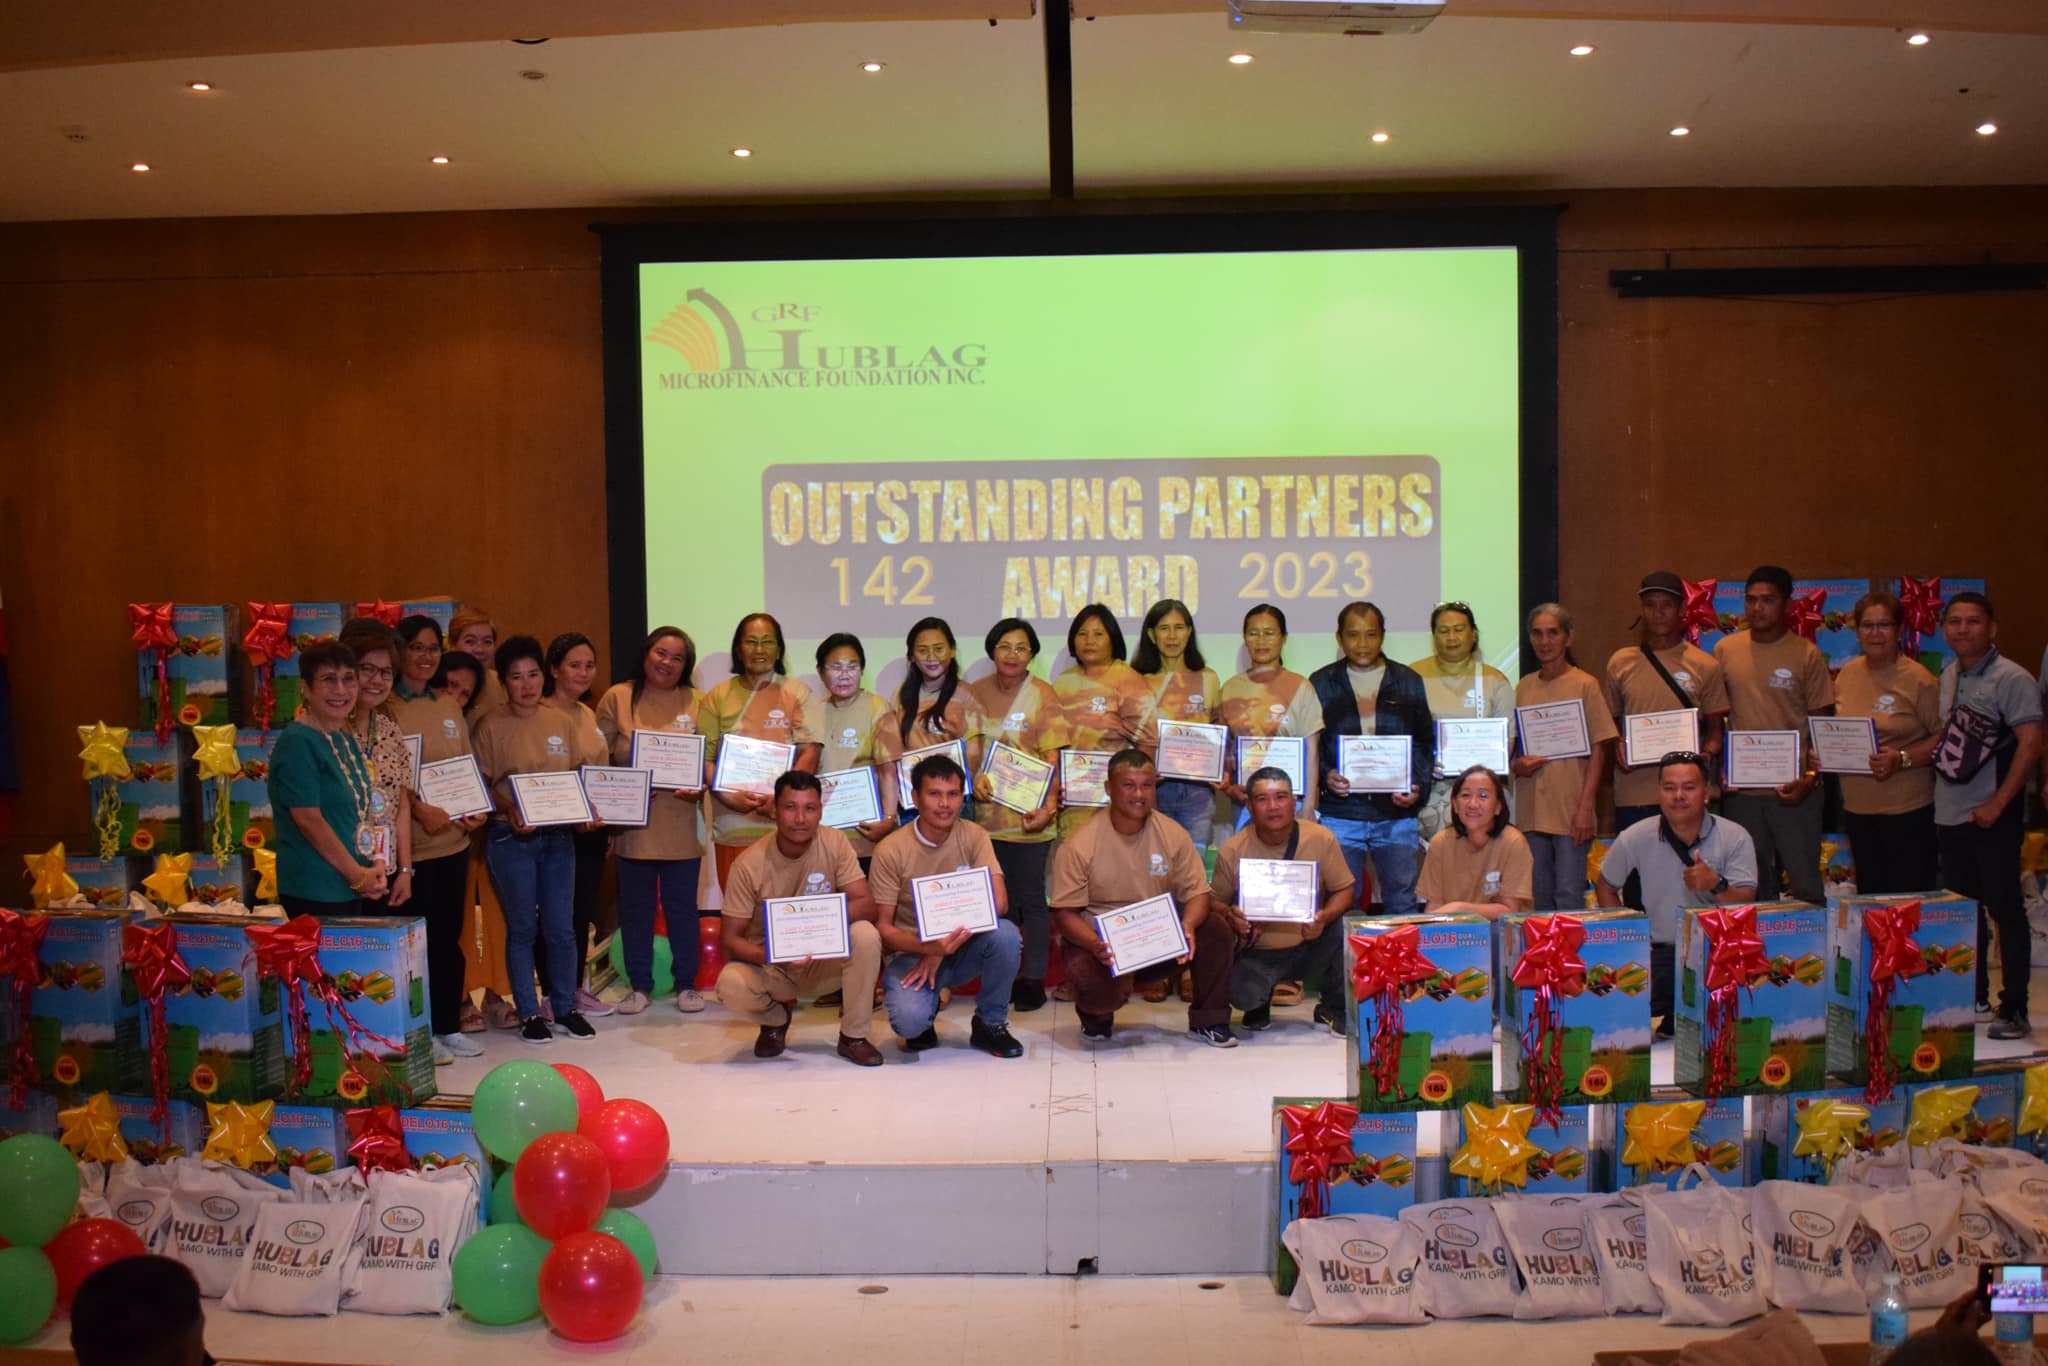 Annual Outstanding Partner's Awards on December 14, 2023